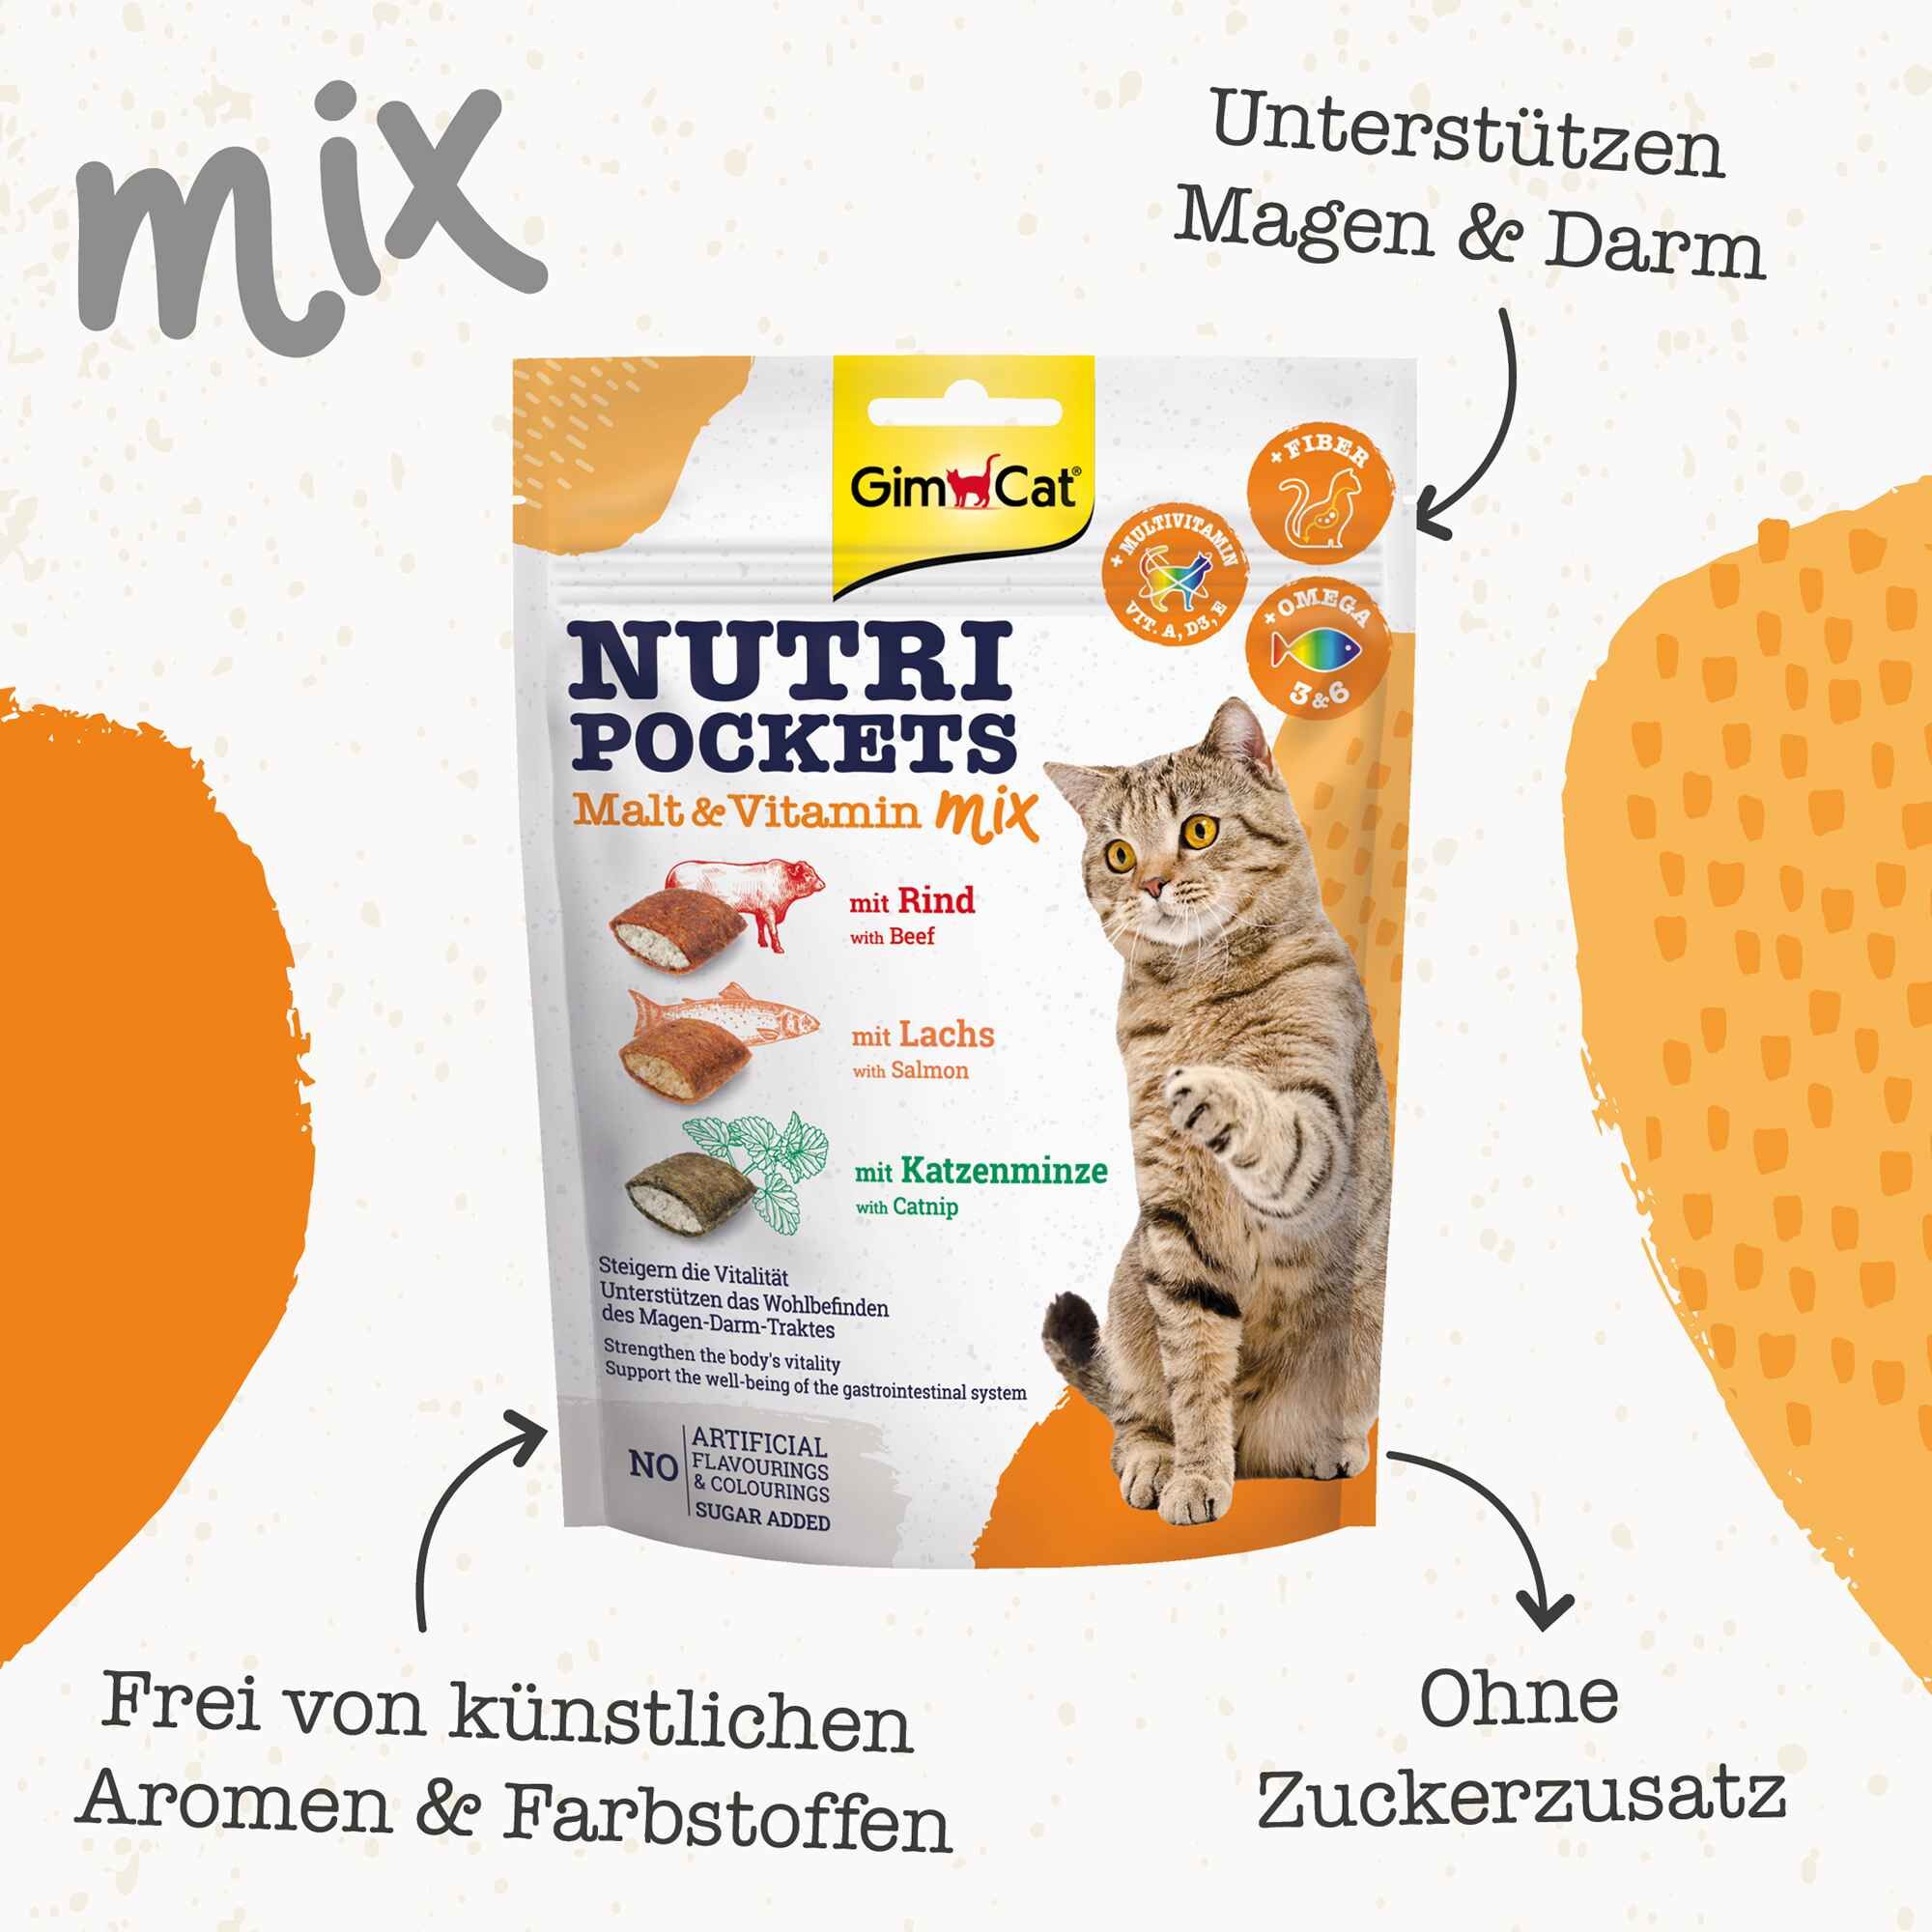 GimCat-Nutri-Pockets-Malz-Vitamin-Mix-Katzensnack-Rind-Lach-Katzenminze-ohne-Zucker-keine-Farbstoffe-und-Aromen-fuer-Magen-Darm-34-419169